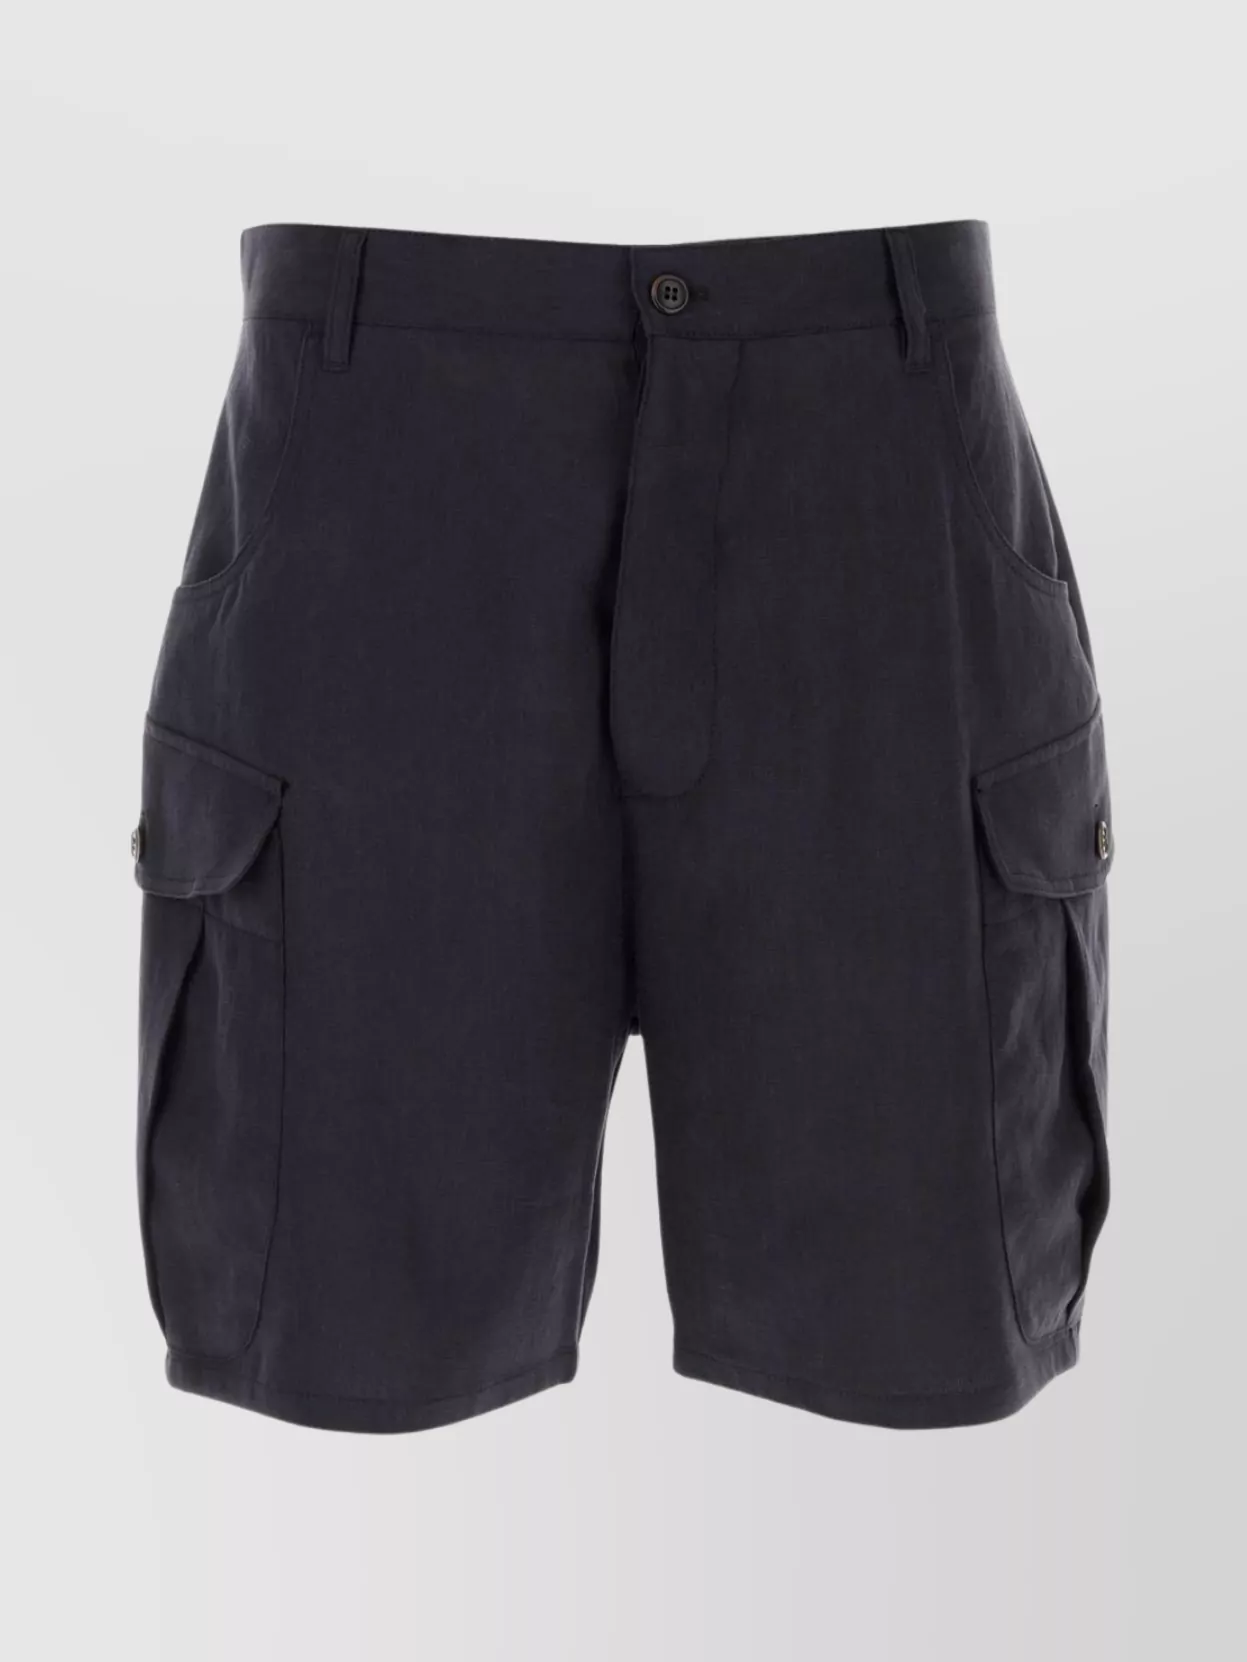 Giorgio Armani Bermuda Linen Shorts Multiple Pockets In Black